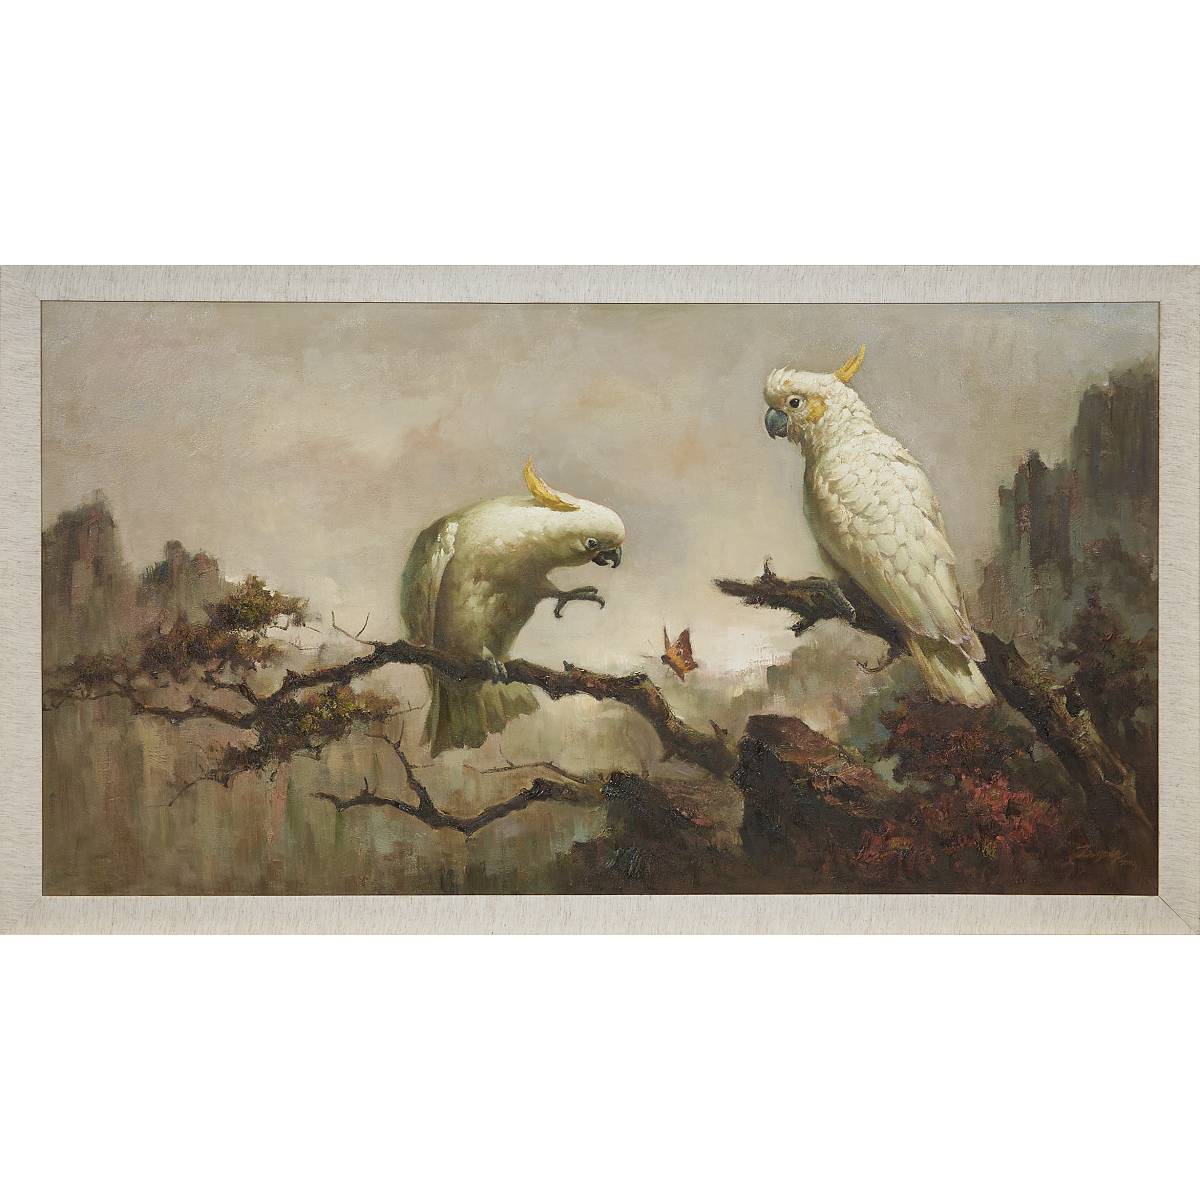 3. 双白鹦鹉 Pair of White Parrots